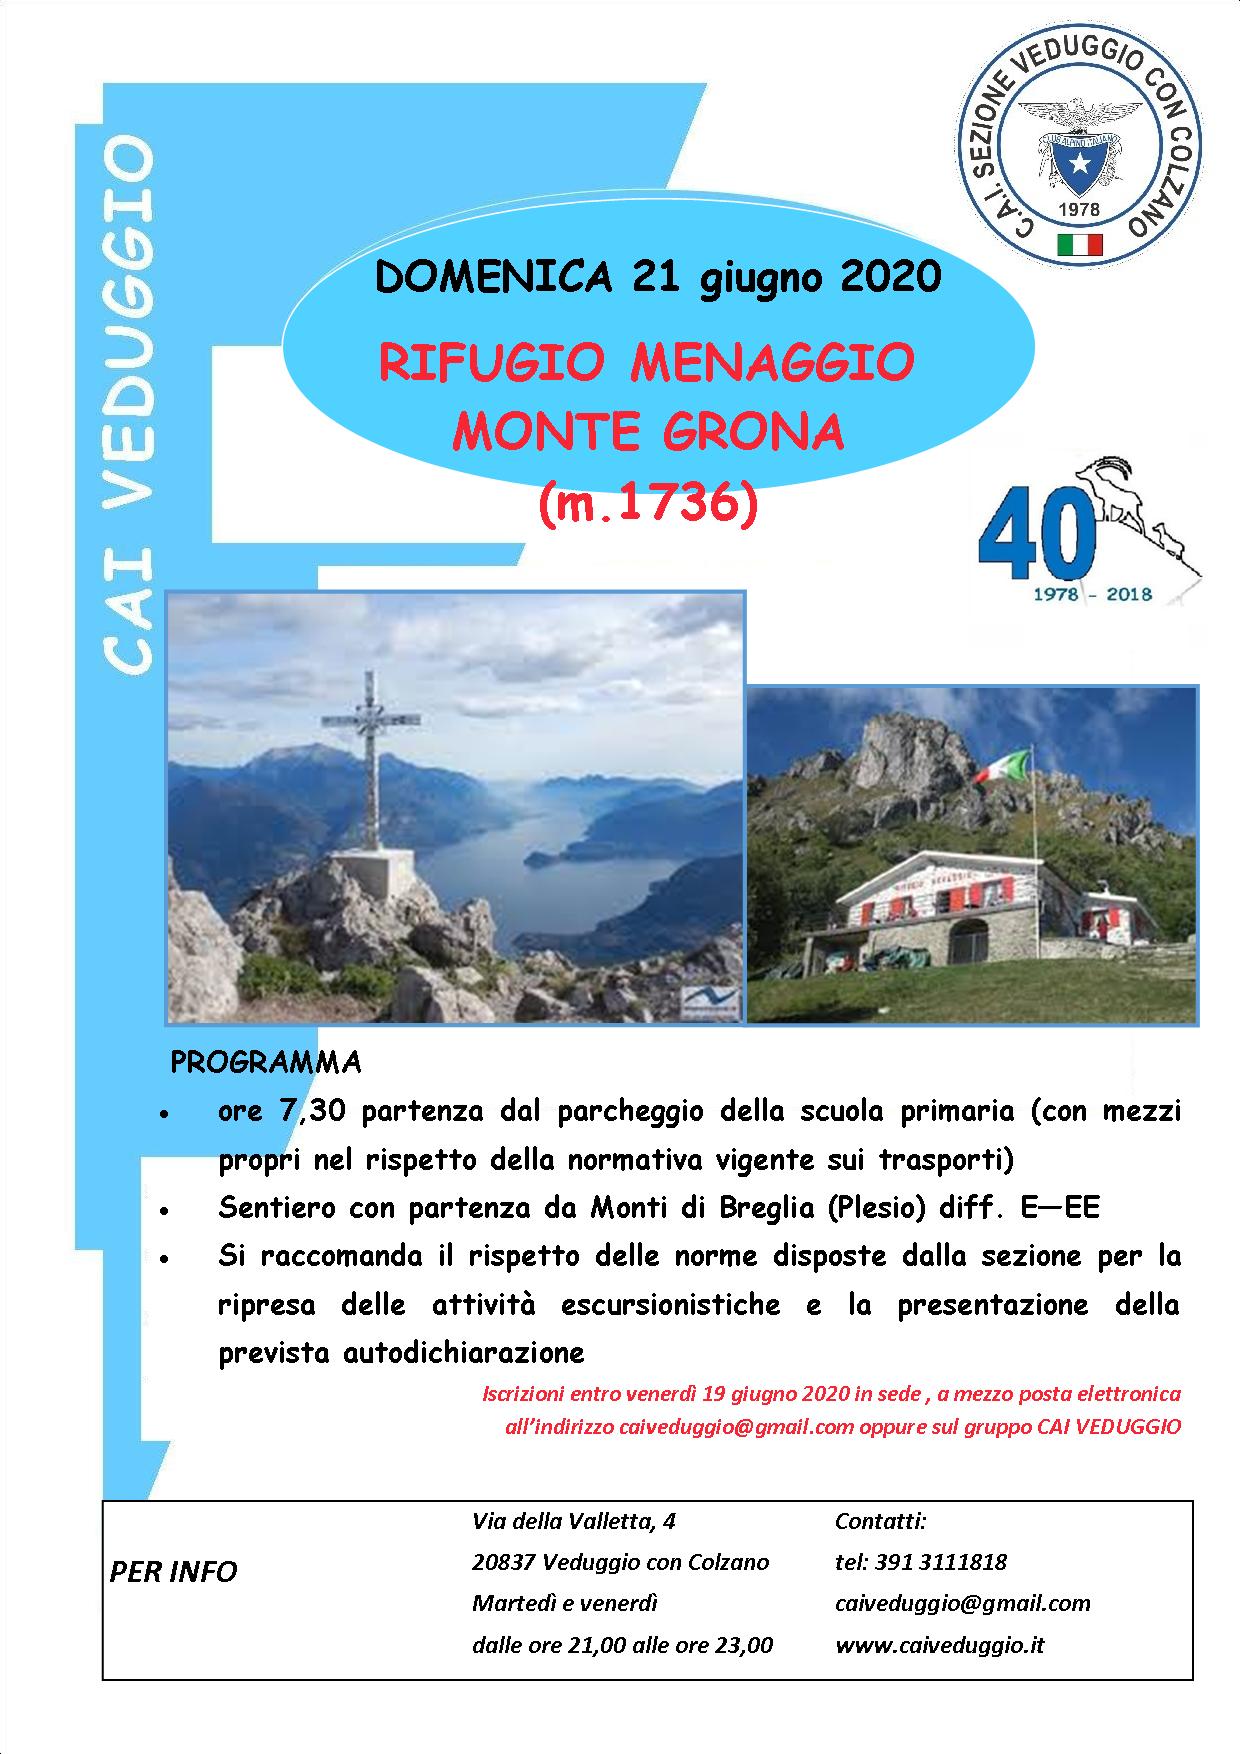 Domenica 21 giugno 2020 – Escursione al Rifugio Menaggio e al Monte Grona (m. 1736)